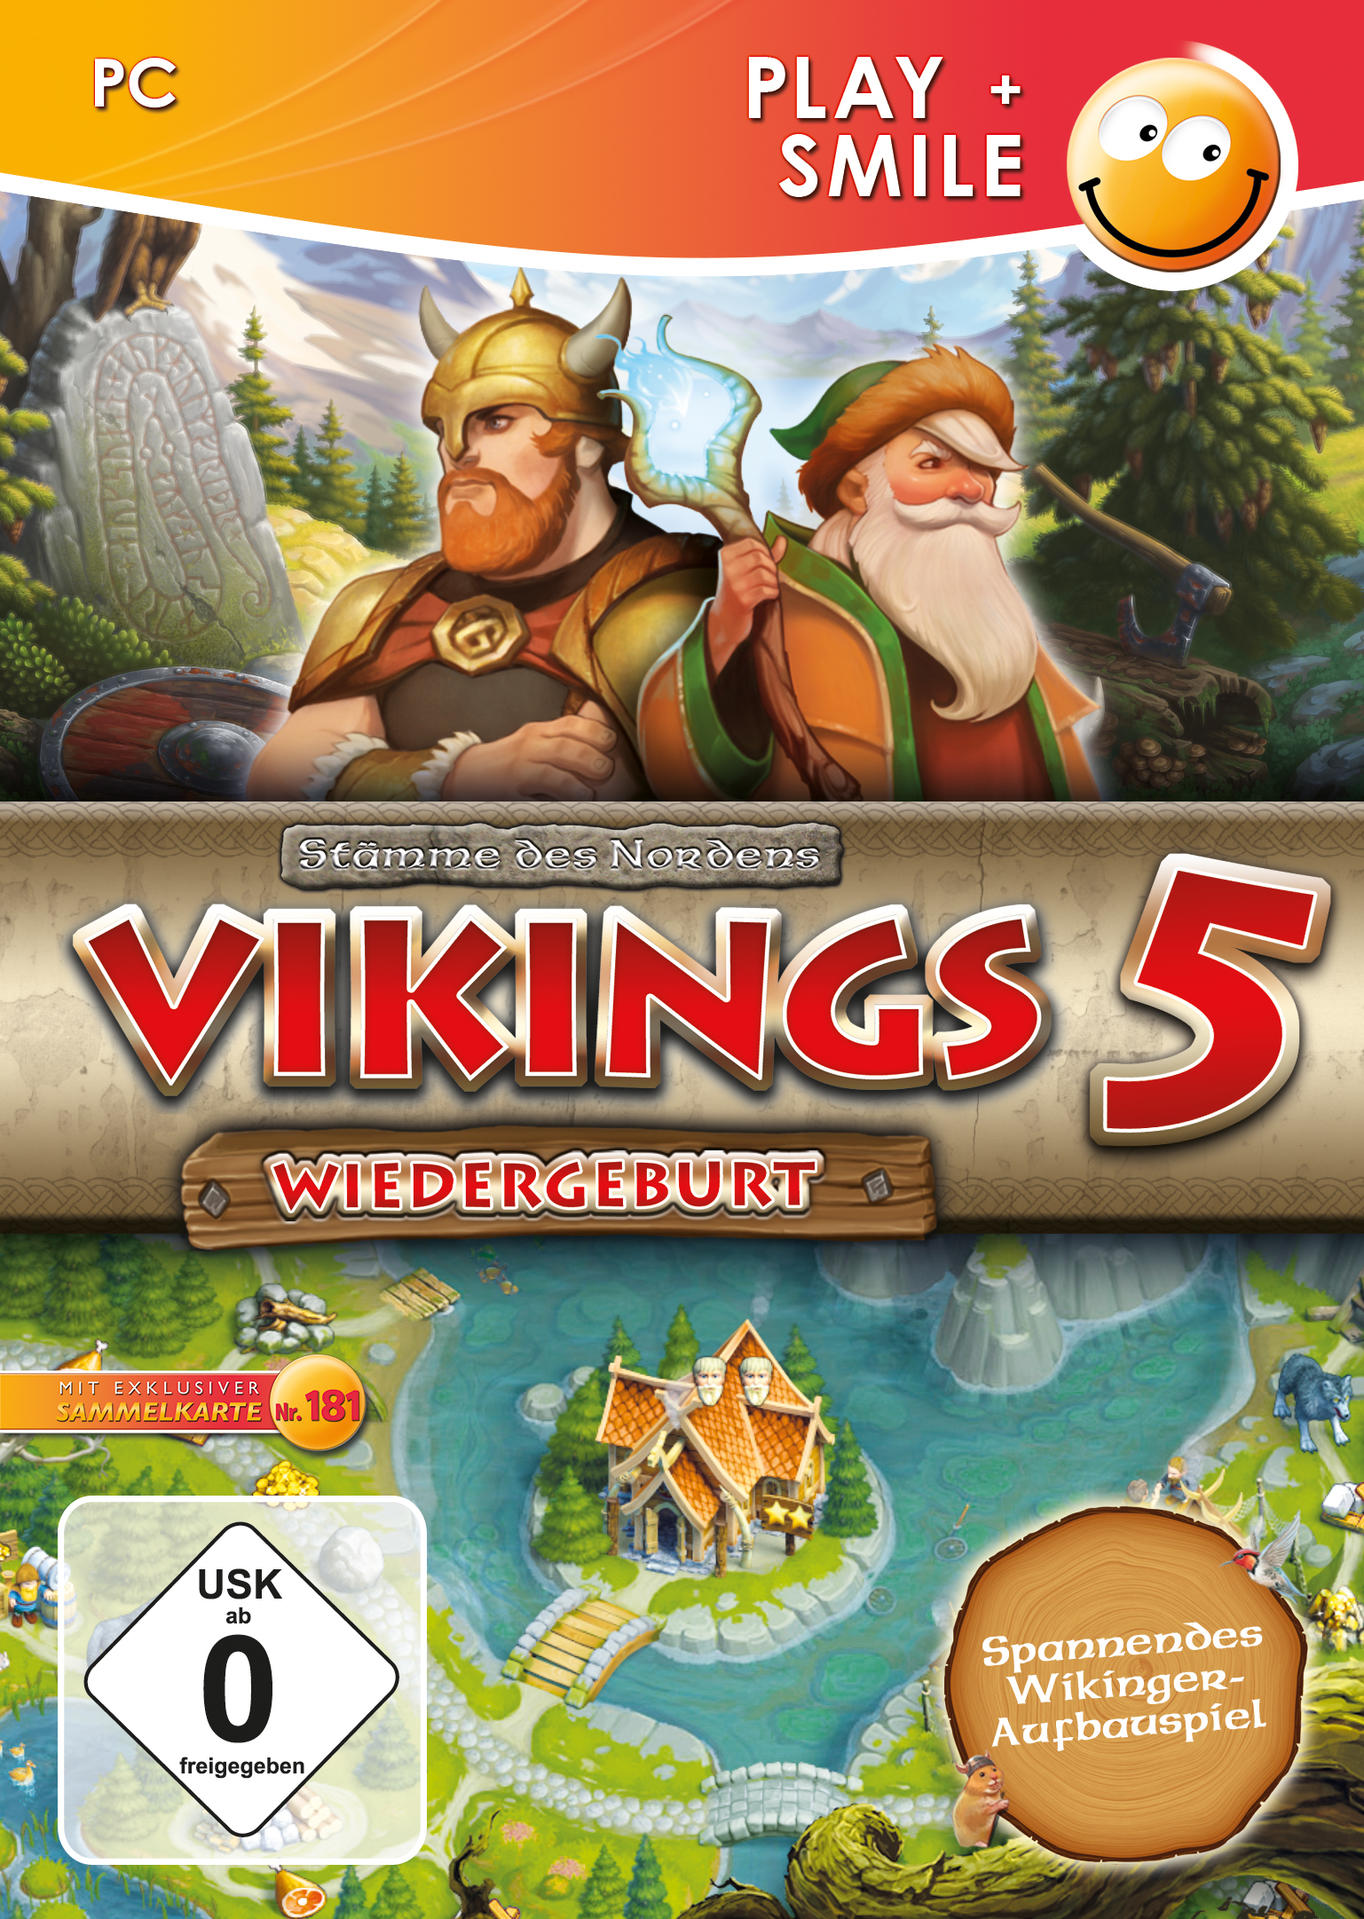 - [PC] 5: Wiedergeburt Vikings